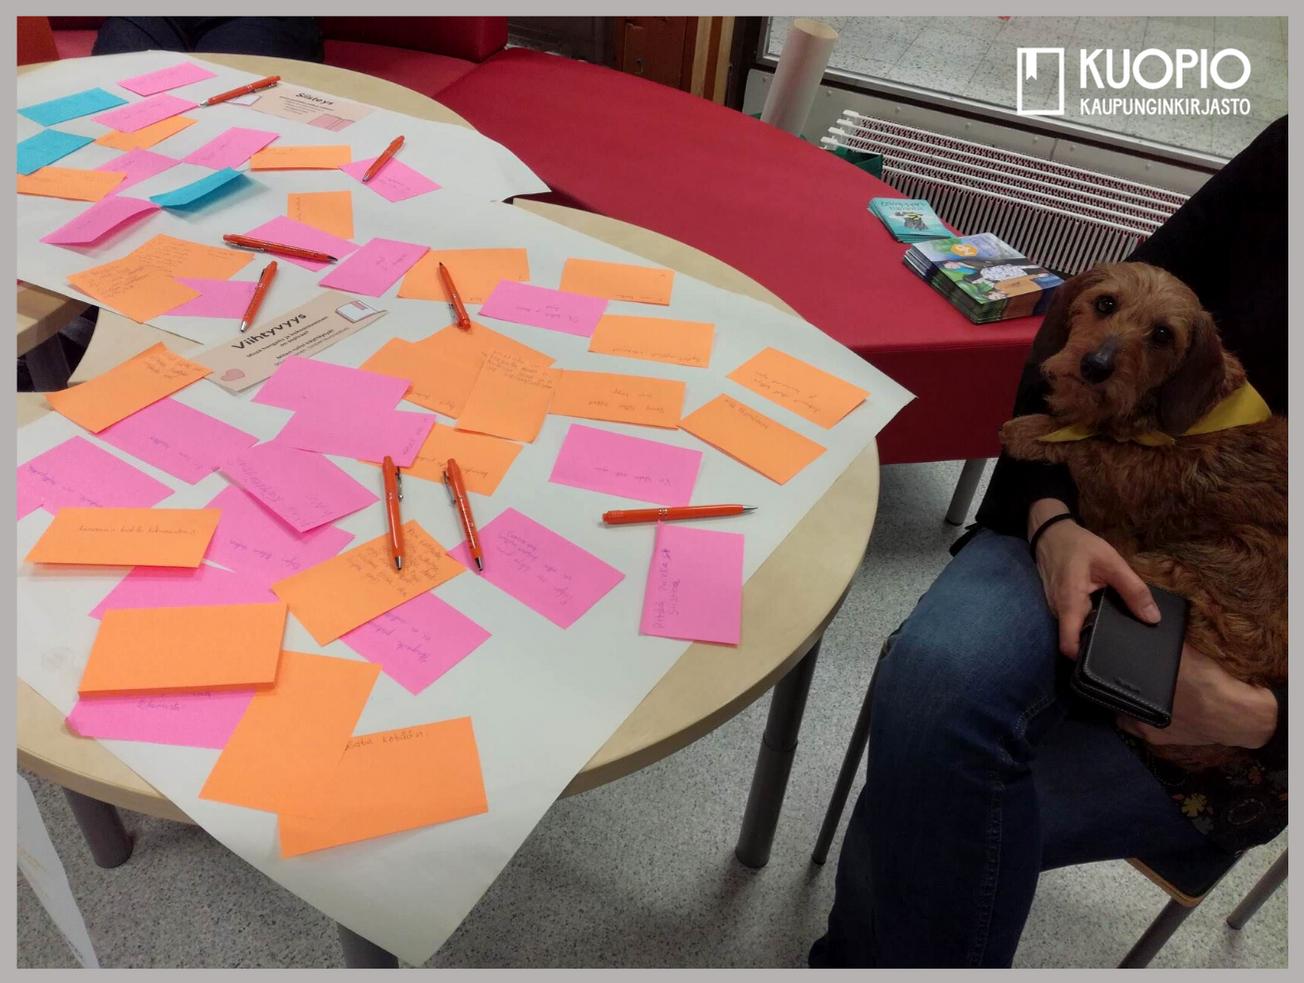 Kuvassa on pöytä, jolla on paljon eri värisiä muistilappuja ja kyniä. Kuvassa on myös koira, joka lepää istuvan henkilön sylissä.